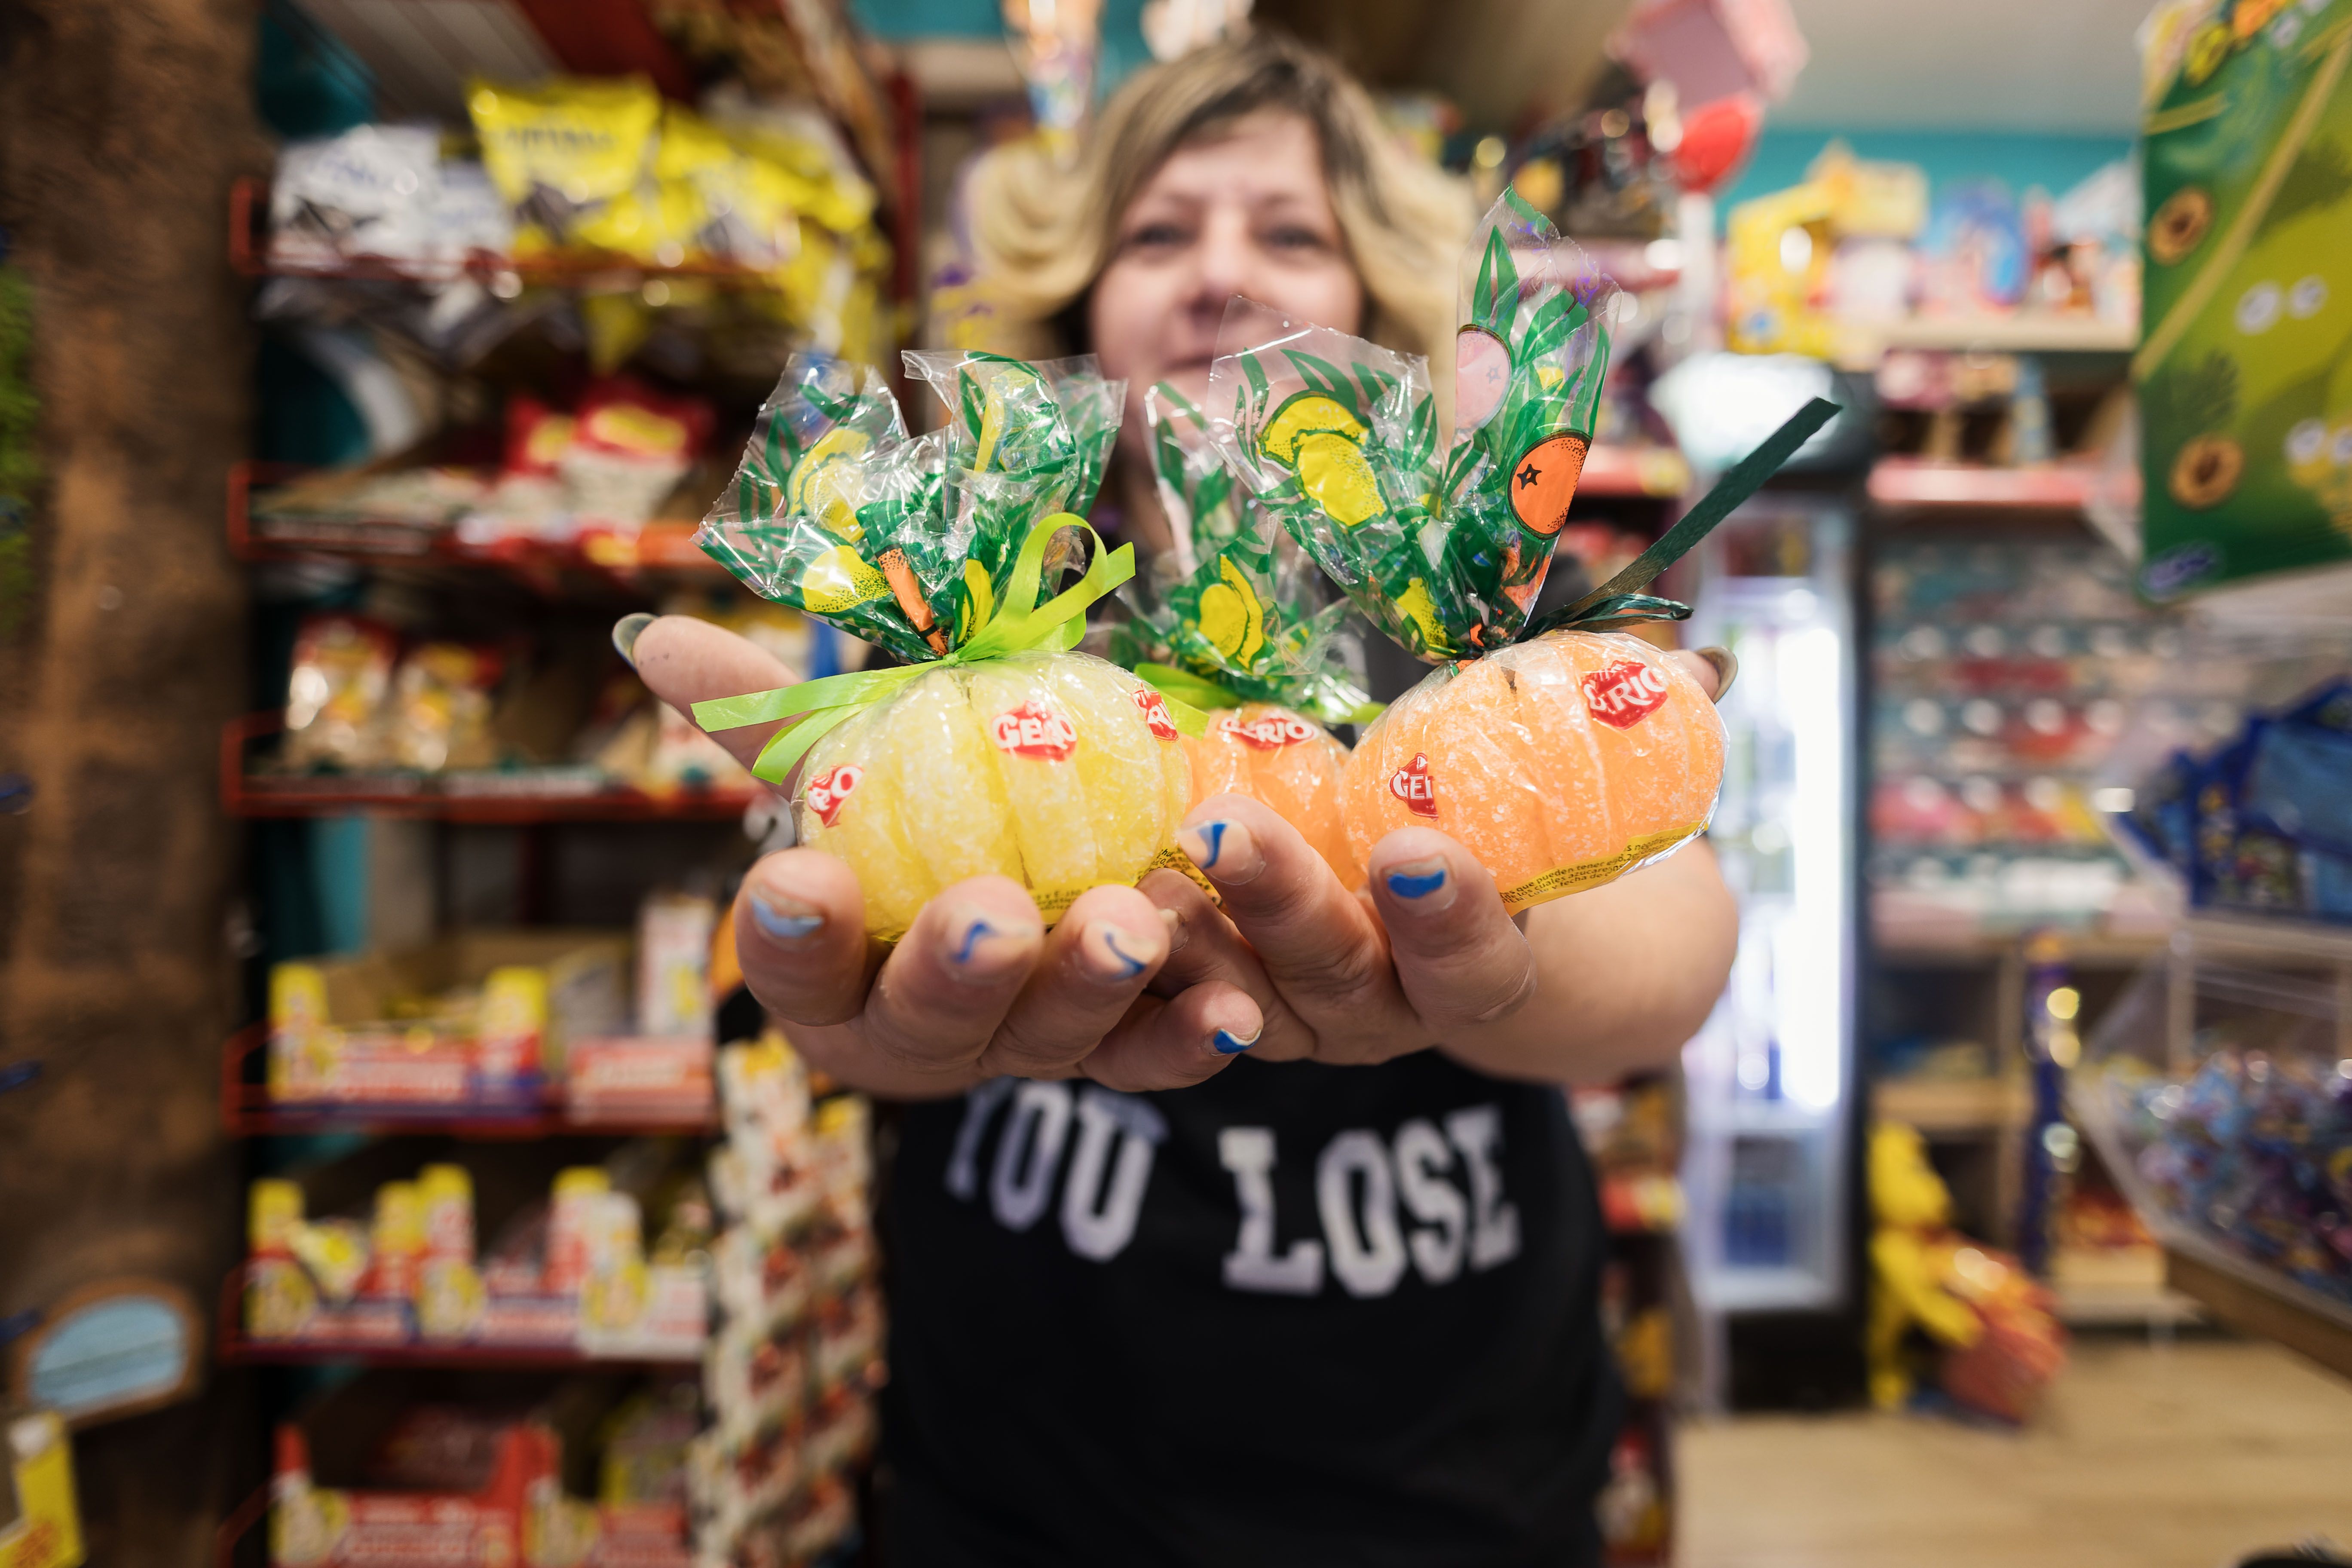 Eva en la tienda sosteniendo los clásicos gajos de naranja y limón, una de las golosinas más veteranas.